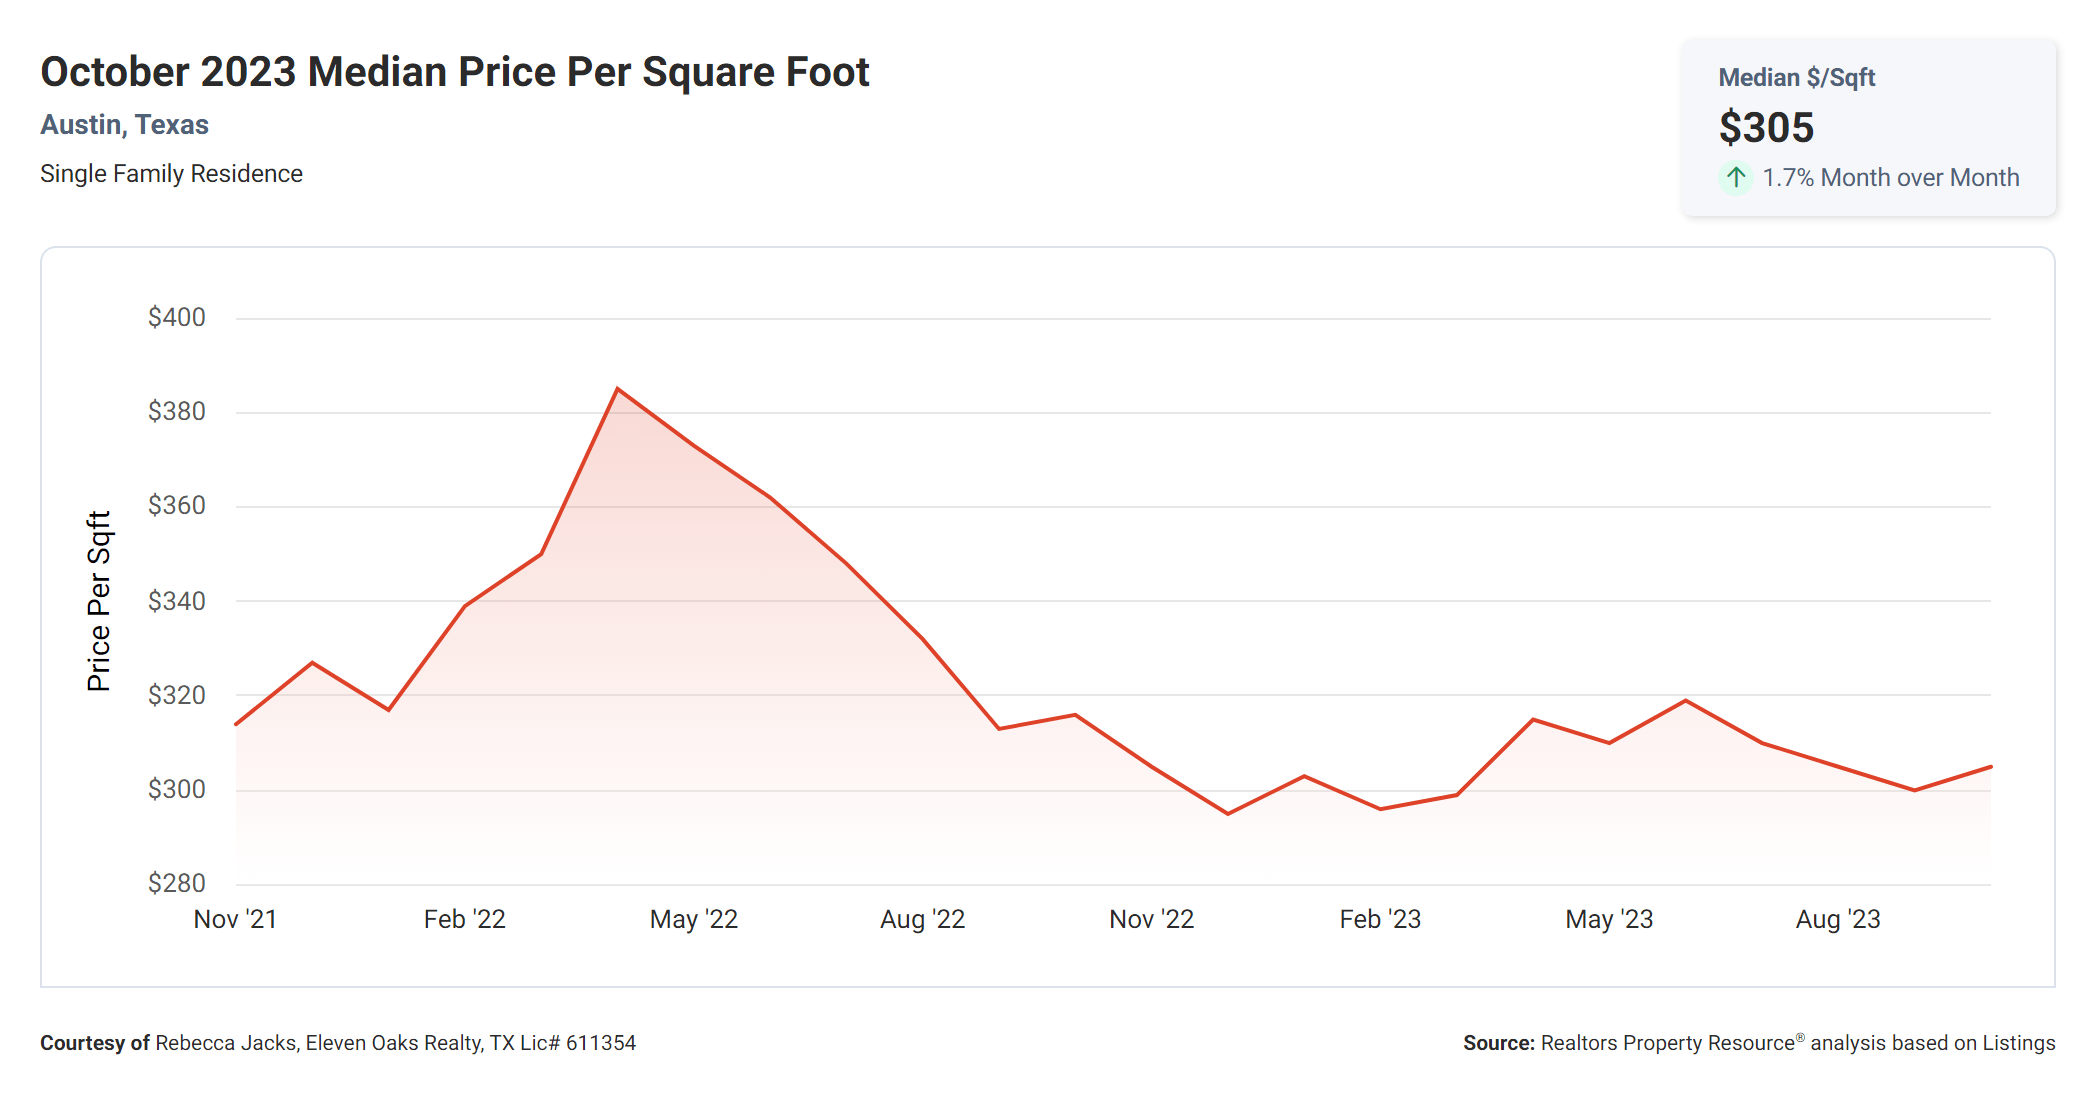 October 2023 median price per square foot